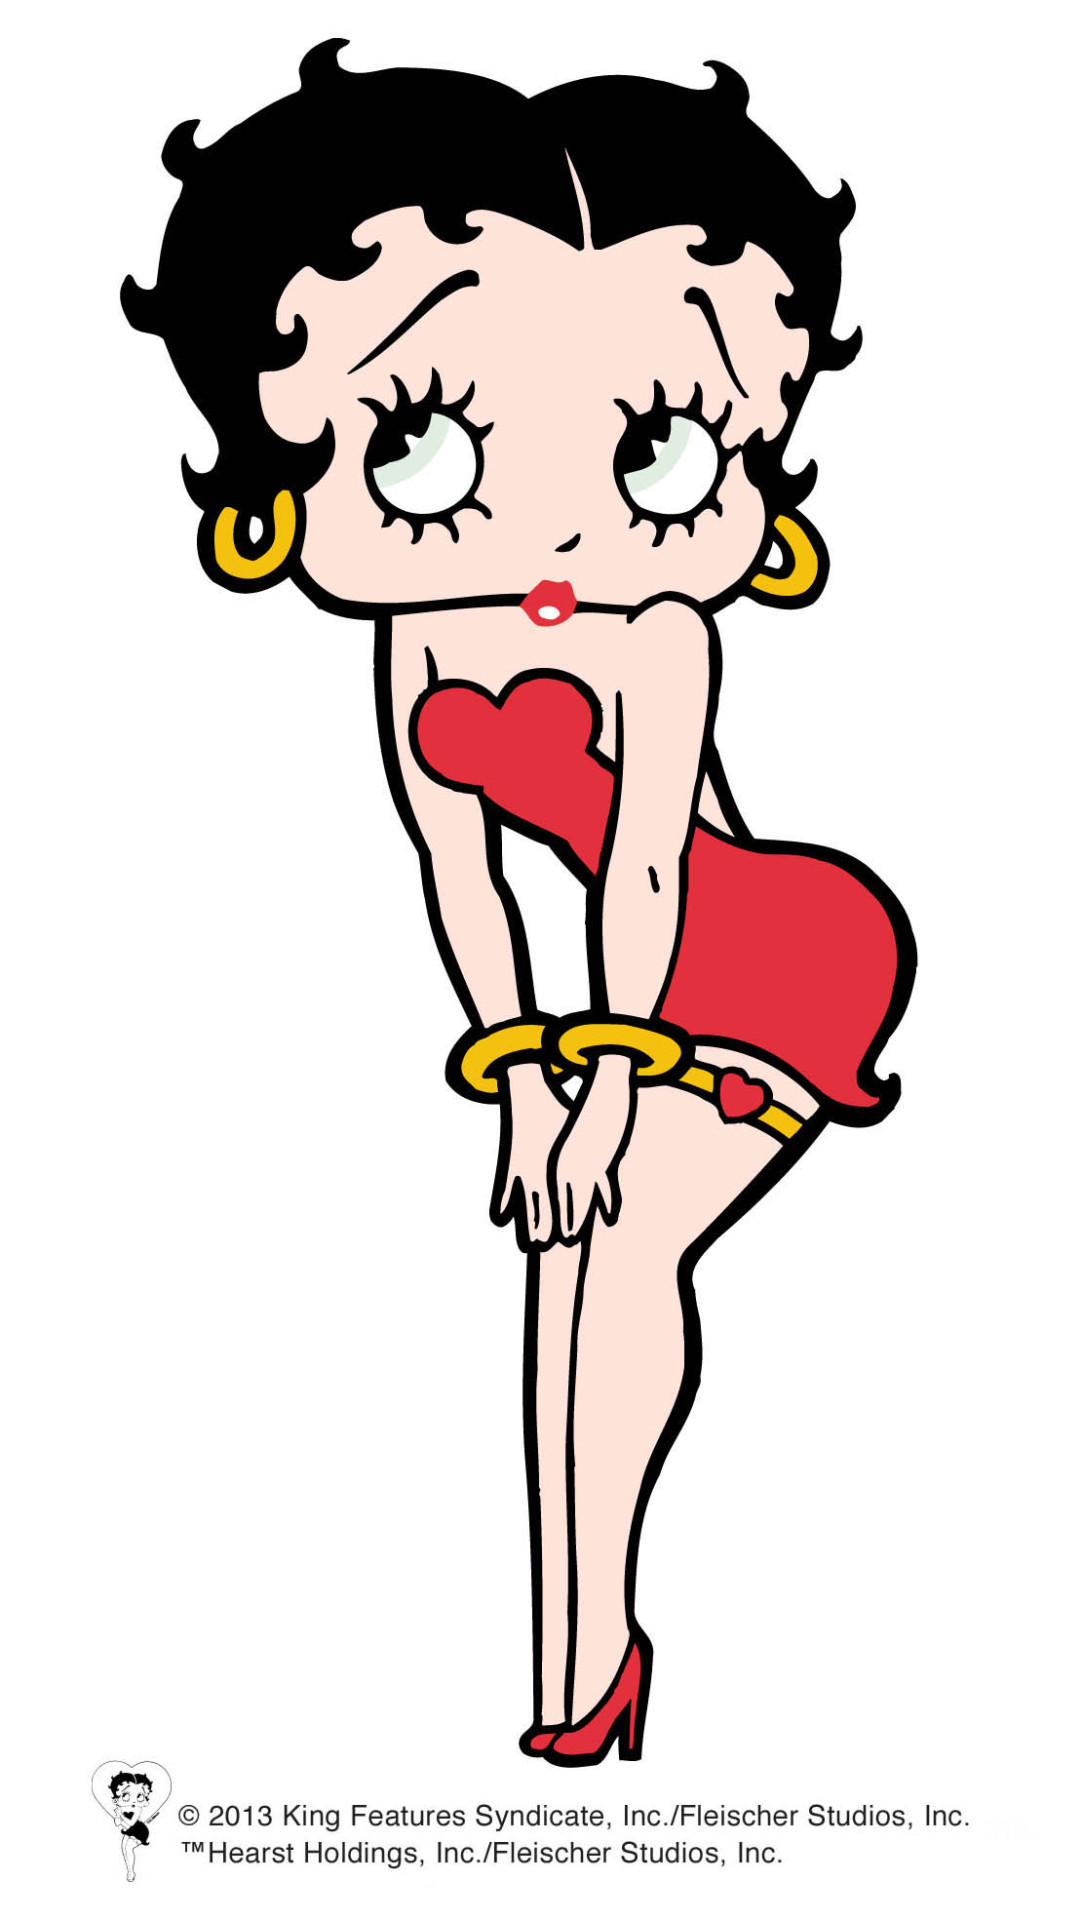 Betty Boop Estilo Pin Up Girl Dibujo A Mano Con Javi